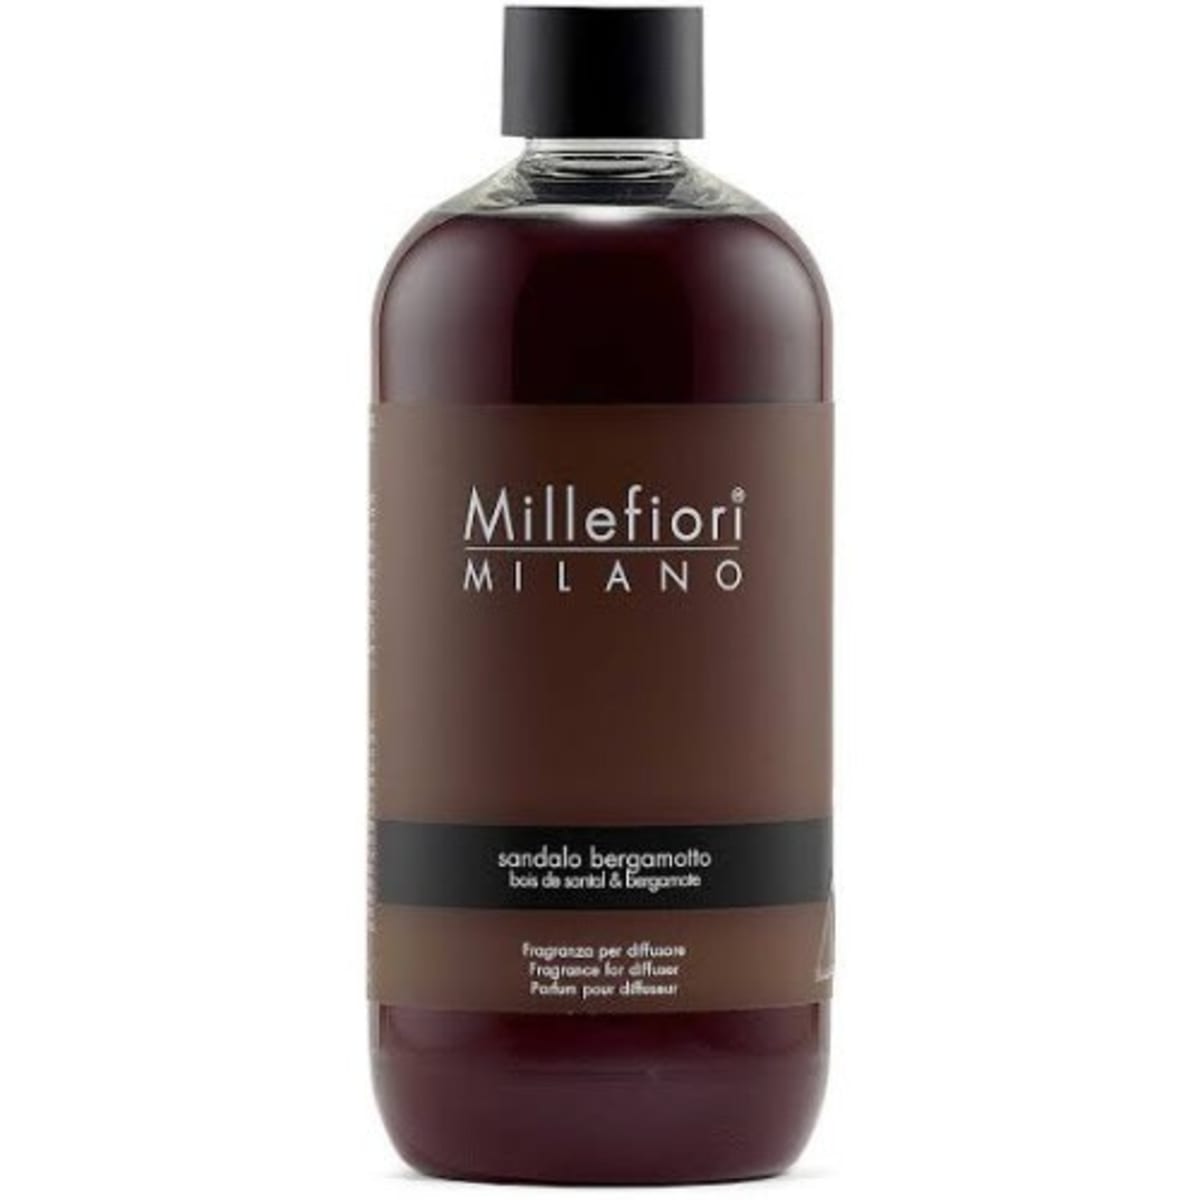 Millefiori Milano Sandalo Bergamotto-Diffuser Refill - 500ml